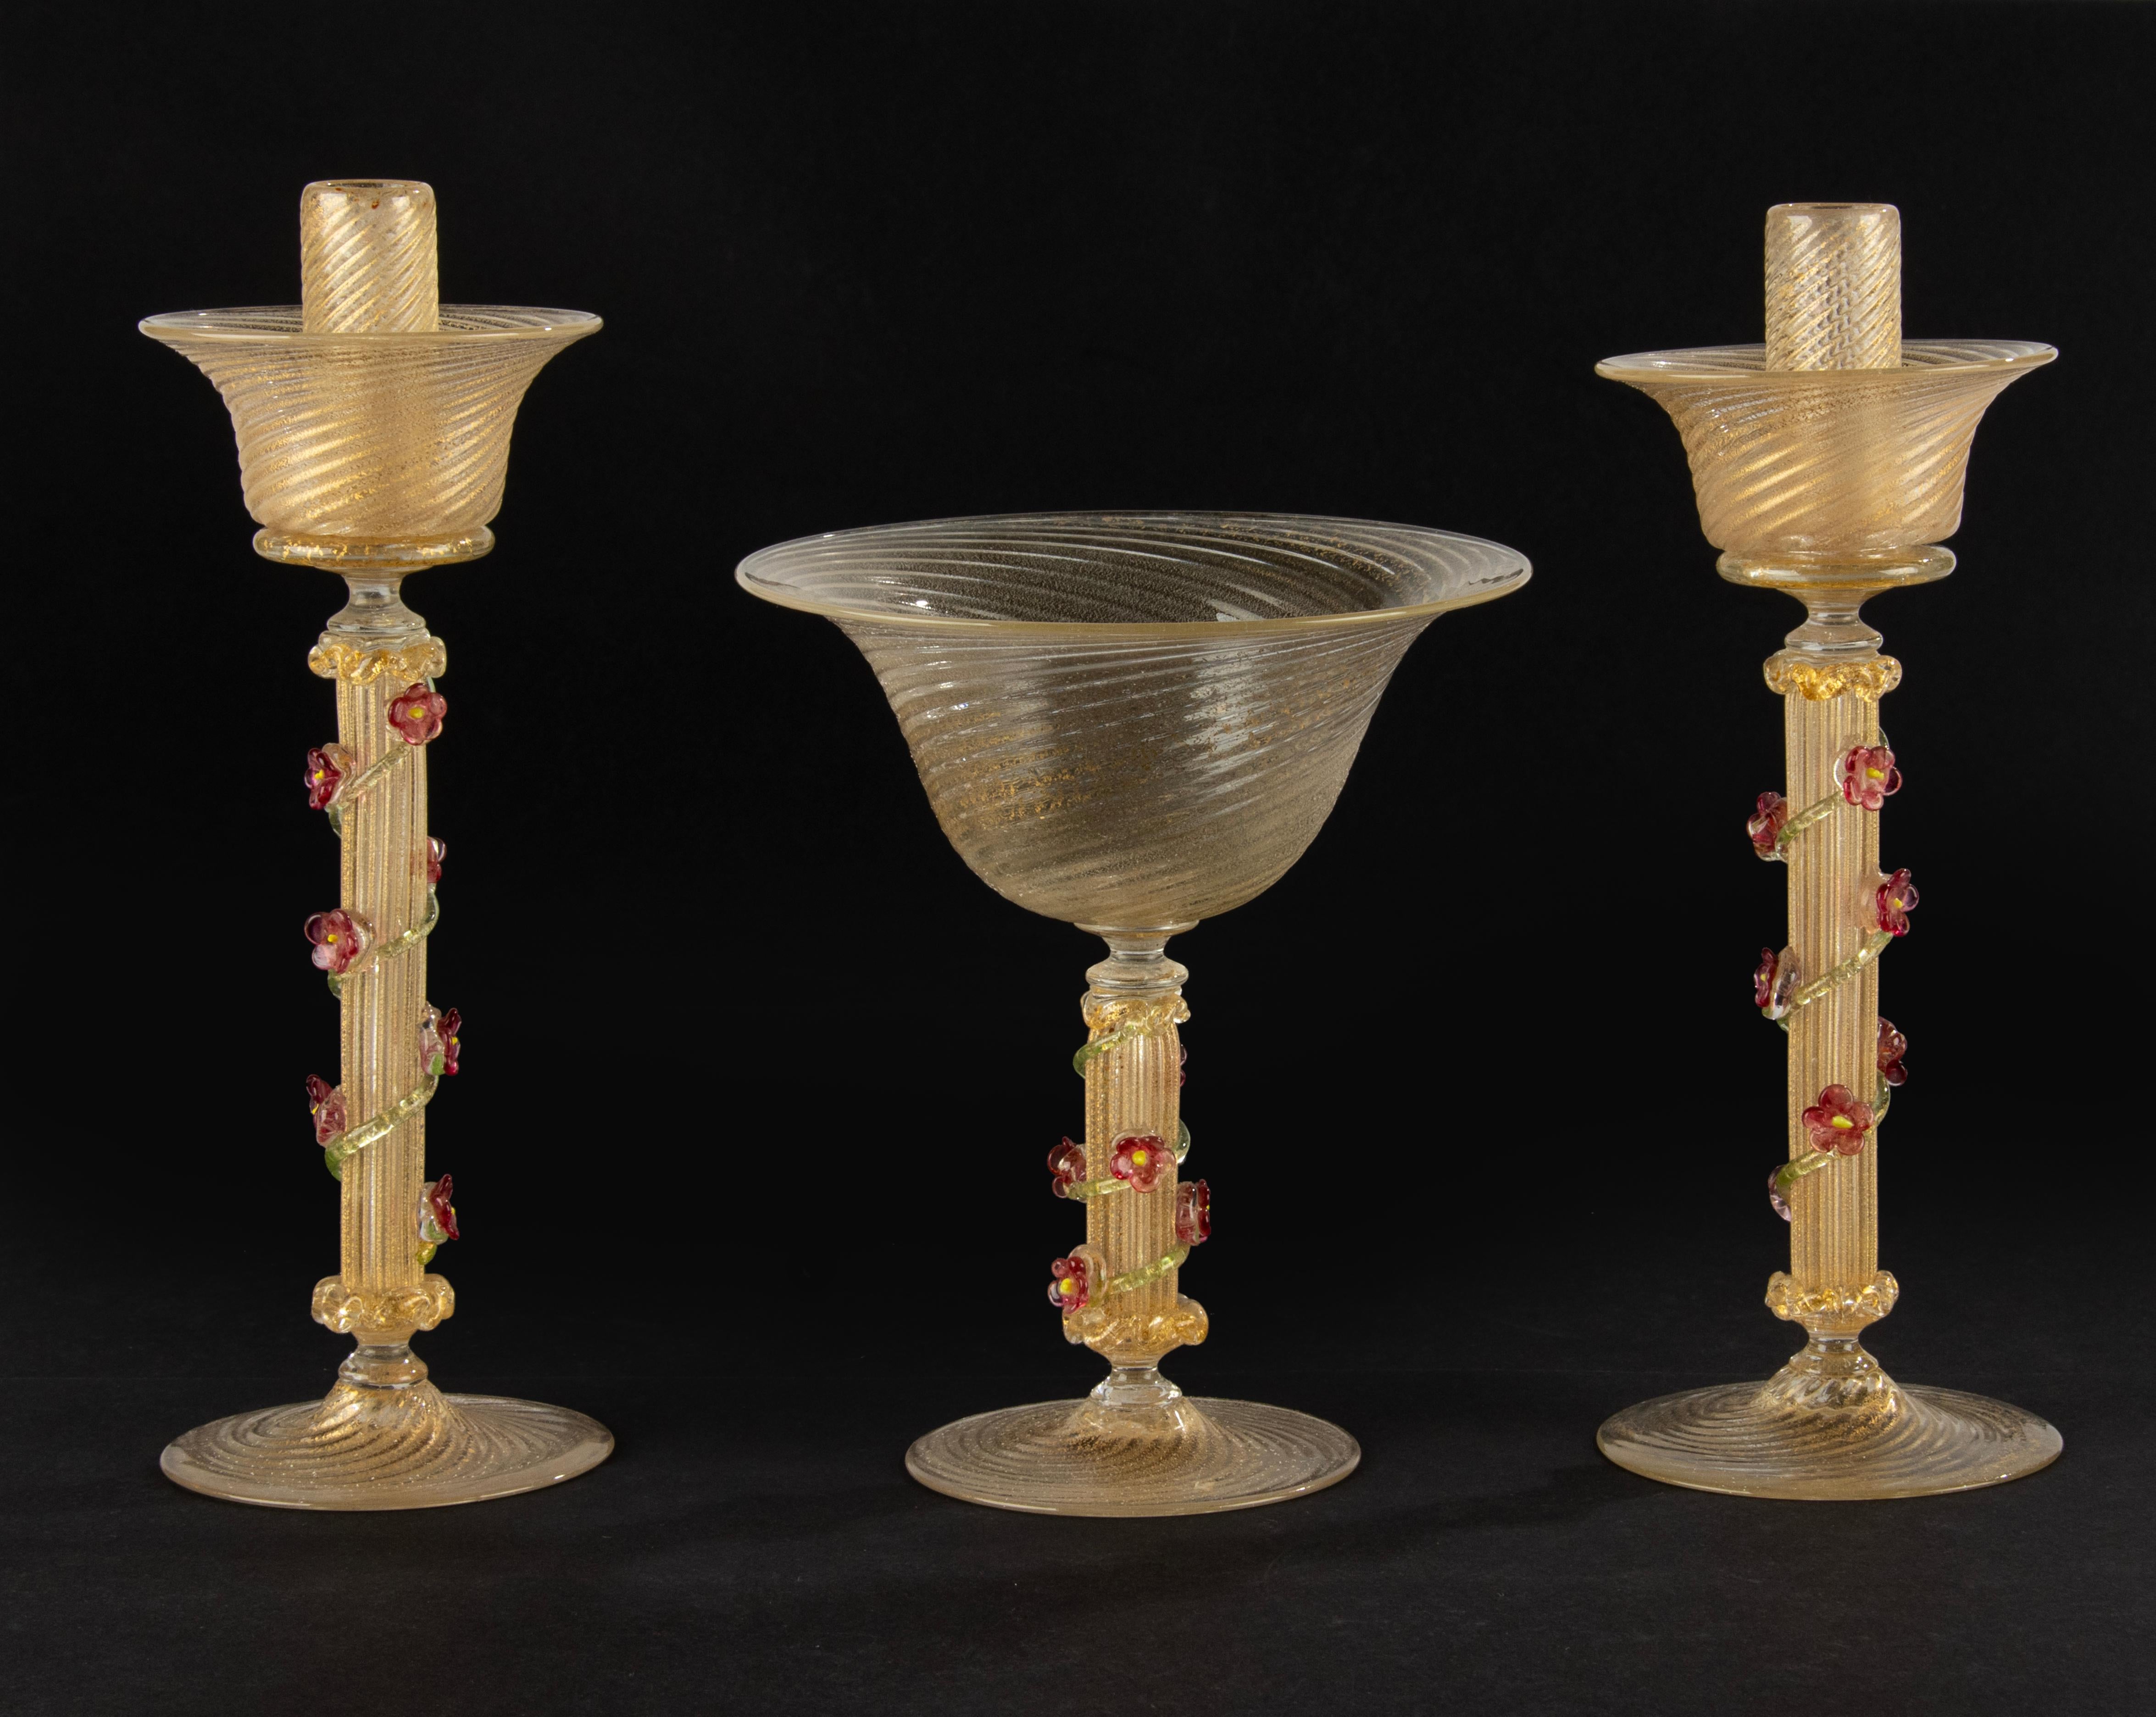 Ein schöner Satz von 2 Murano-Glas-Kerzenhaltern und einer Schale. 
Das Glas hat schöne goldfarbene Einschlüsse, die Stiele sind mit zarten Blüten verziert. 
Maße: die Kerzen sind 26 cm hoch und haben einen Durchmesser von 9 cm, die Schale ist 18 cm